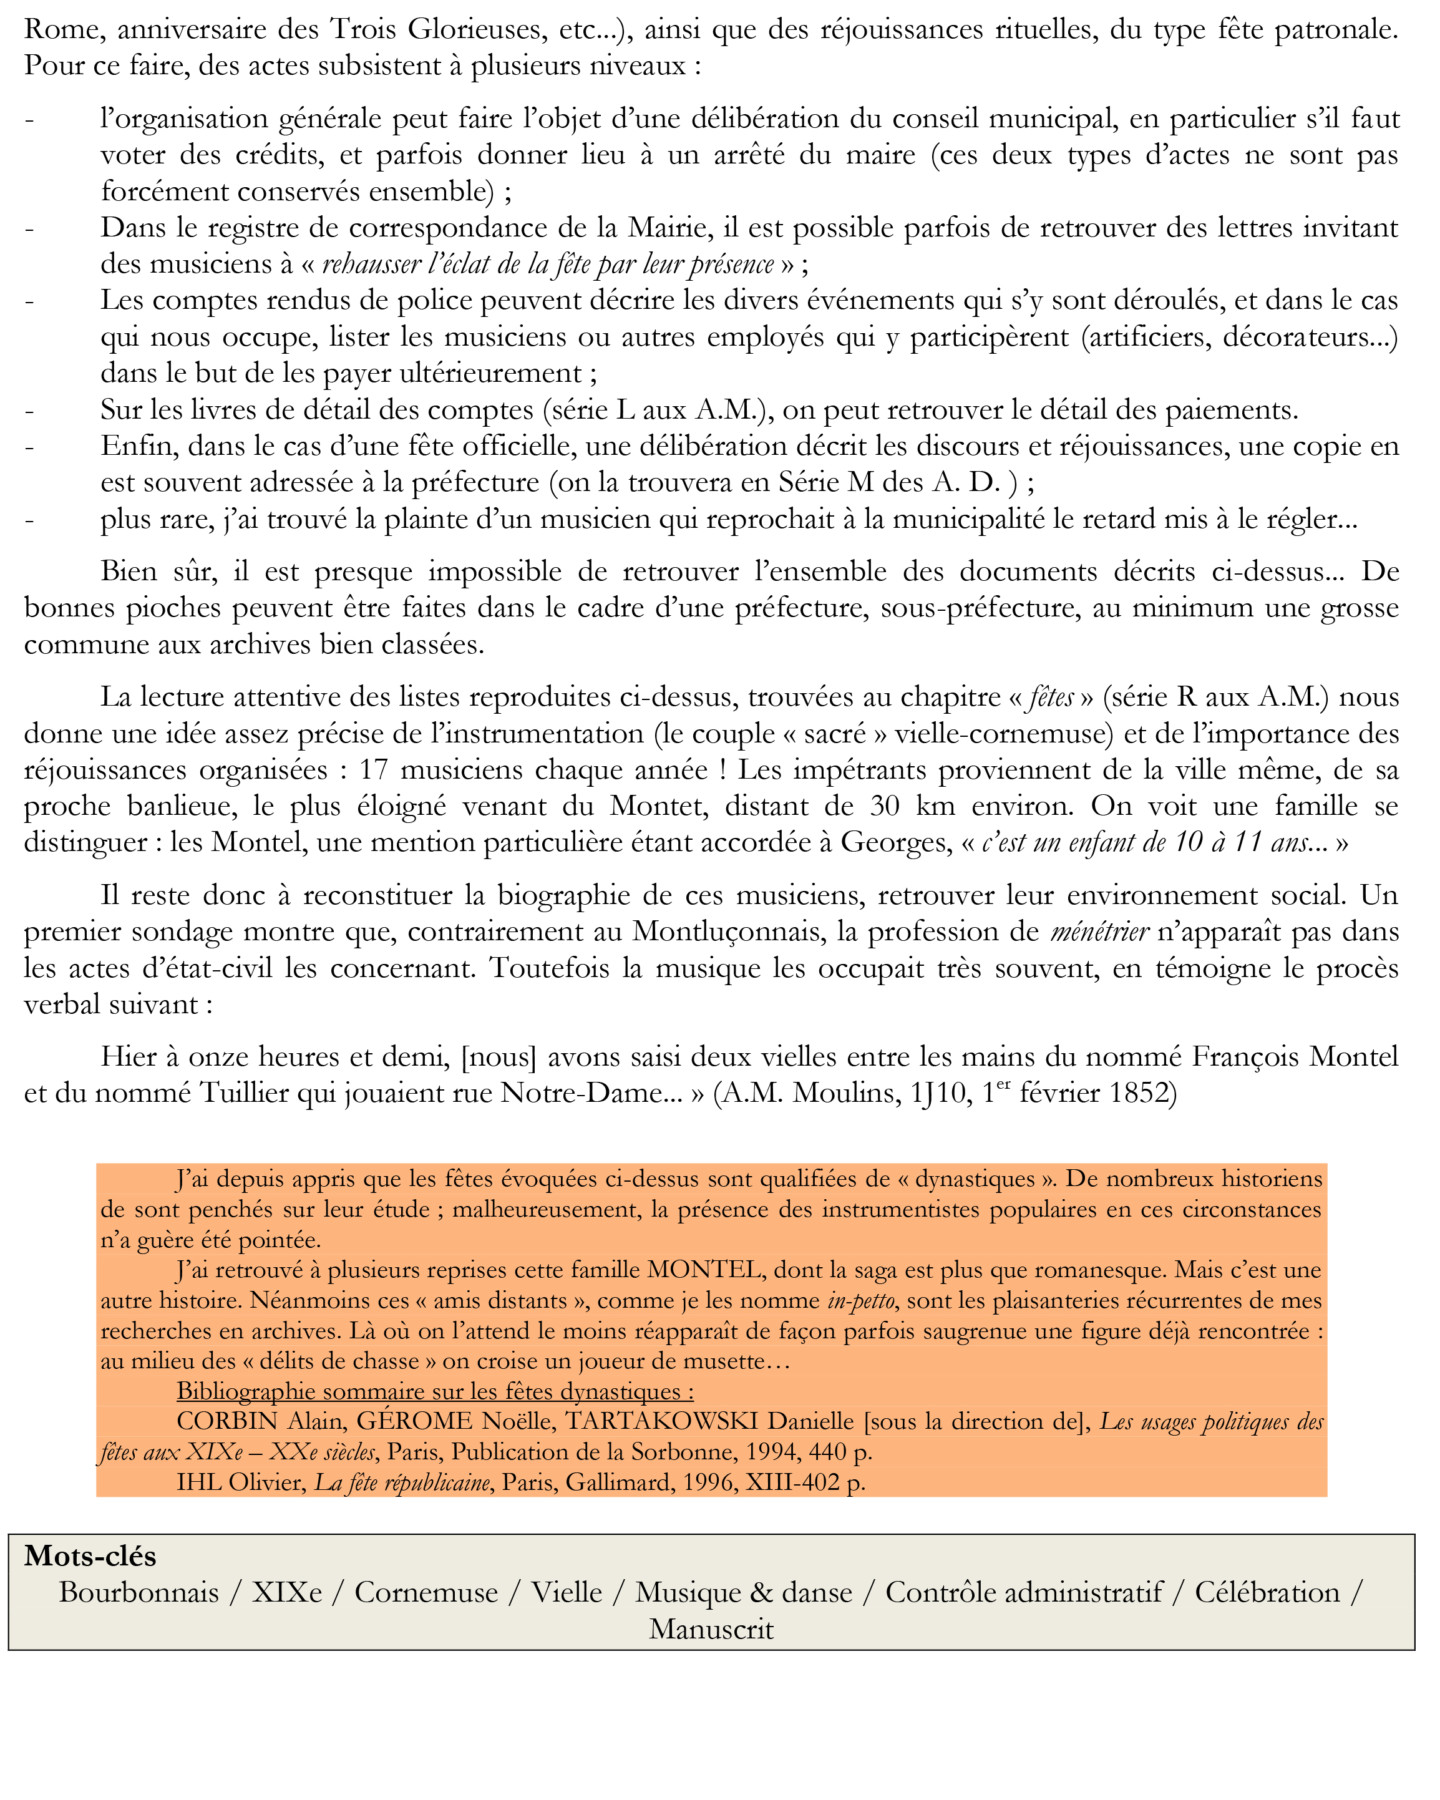 PDM07 – Factures de ménétriers, Moulins (Allier), 1851-52